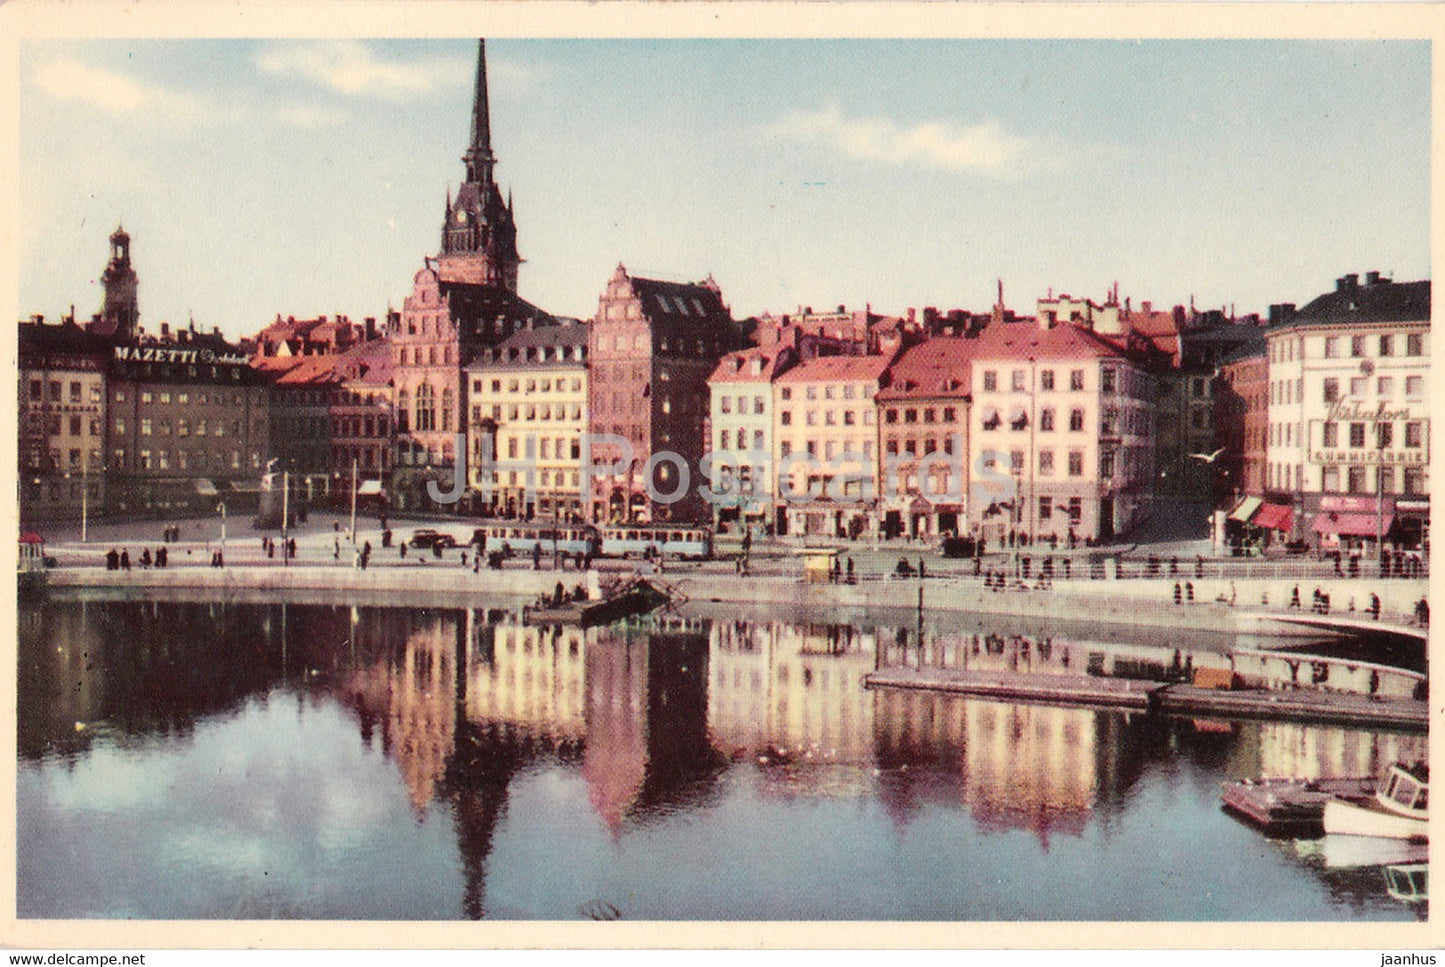 Stockholm - Kornhamnstorg med Tyska kyrkan - tram - old postcard - 1955 - Sweden - used - JH Postcards